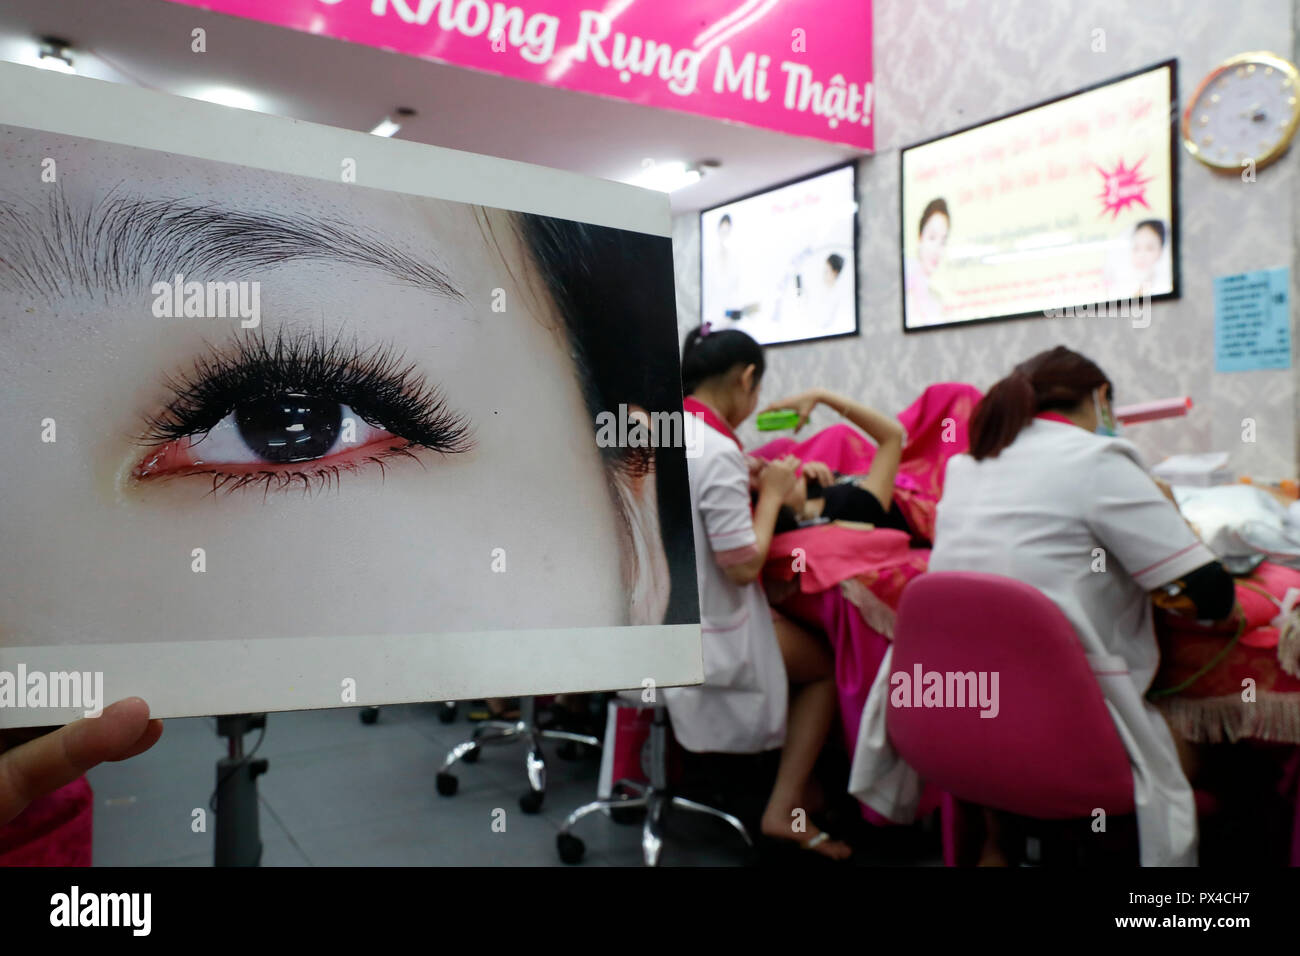 Vietnamese beauty salon. Beautician applying extended eyelashes to woman. Ho Chi Minh City. Vietnam. Stock Photo